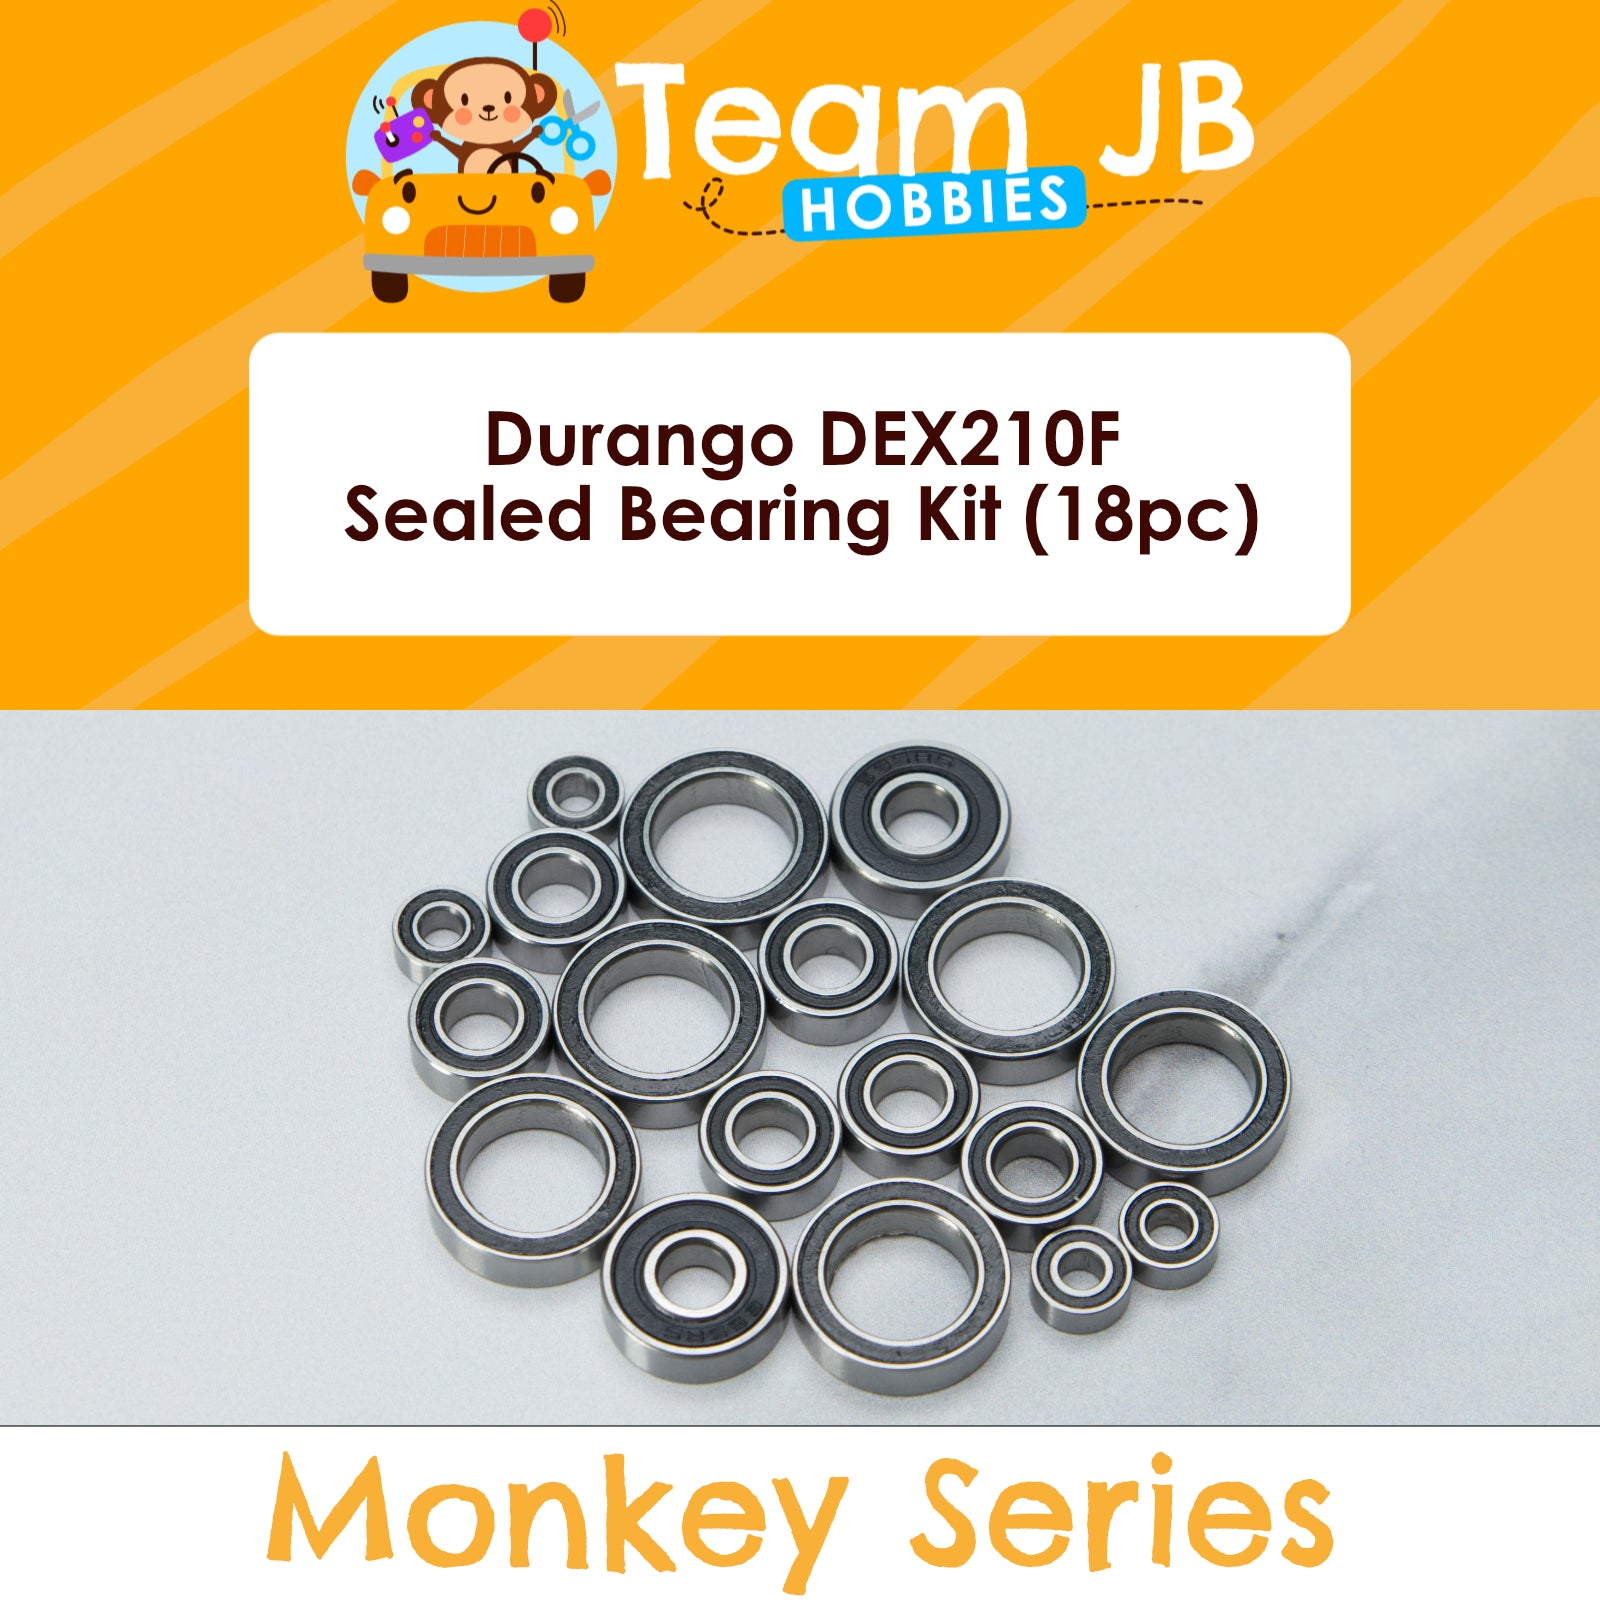 Durango DEX210F - Sealed Bearing Kit